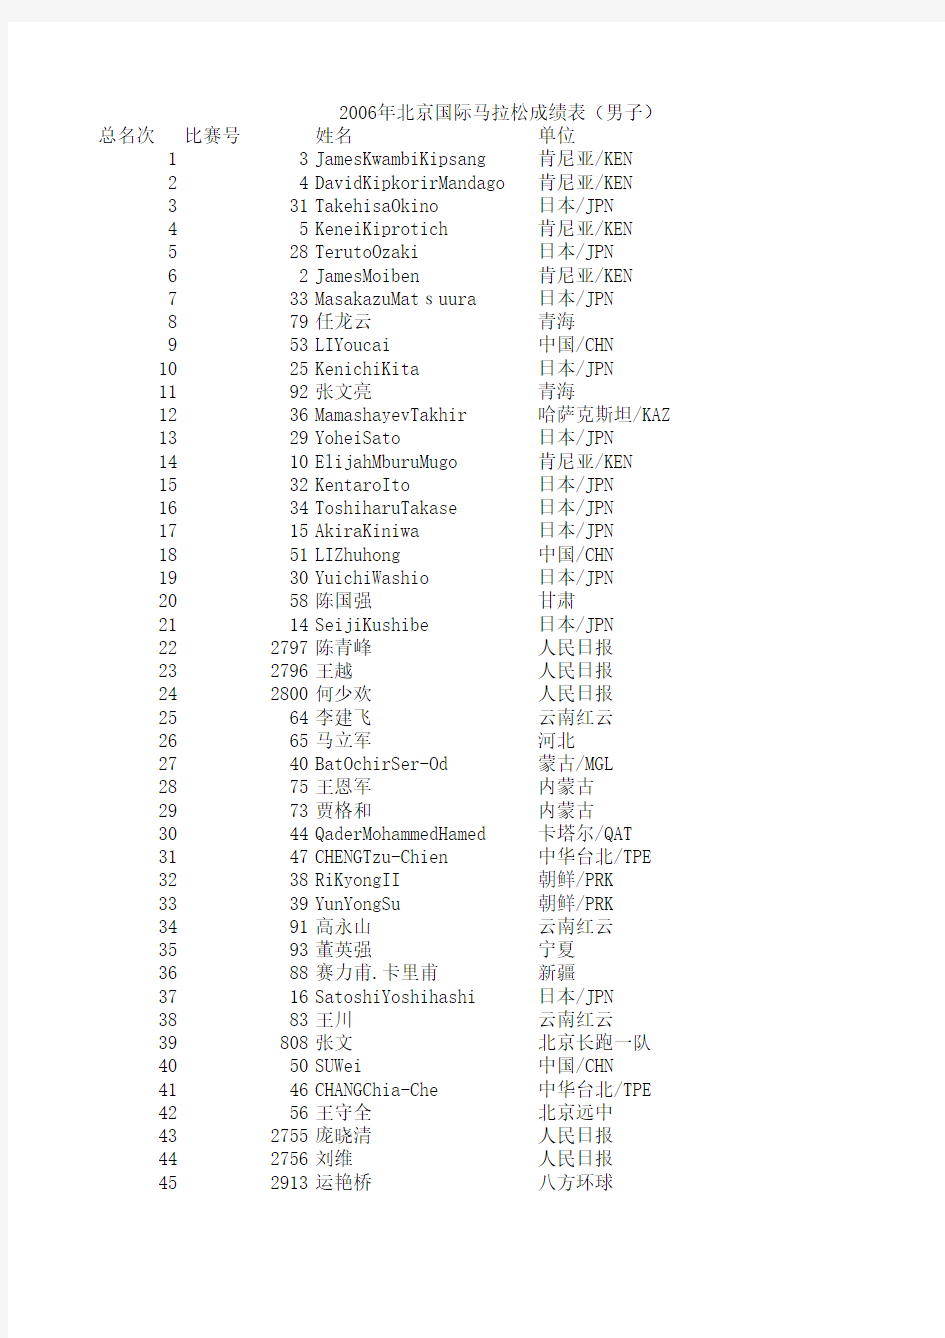 2006北京国际马拉松成绩表